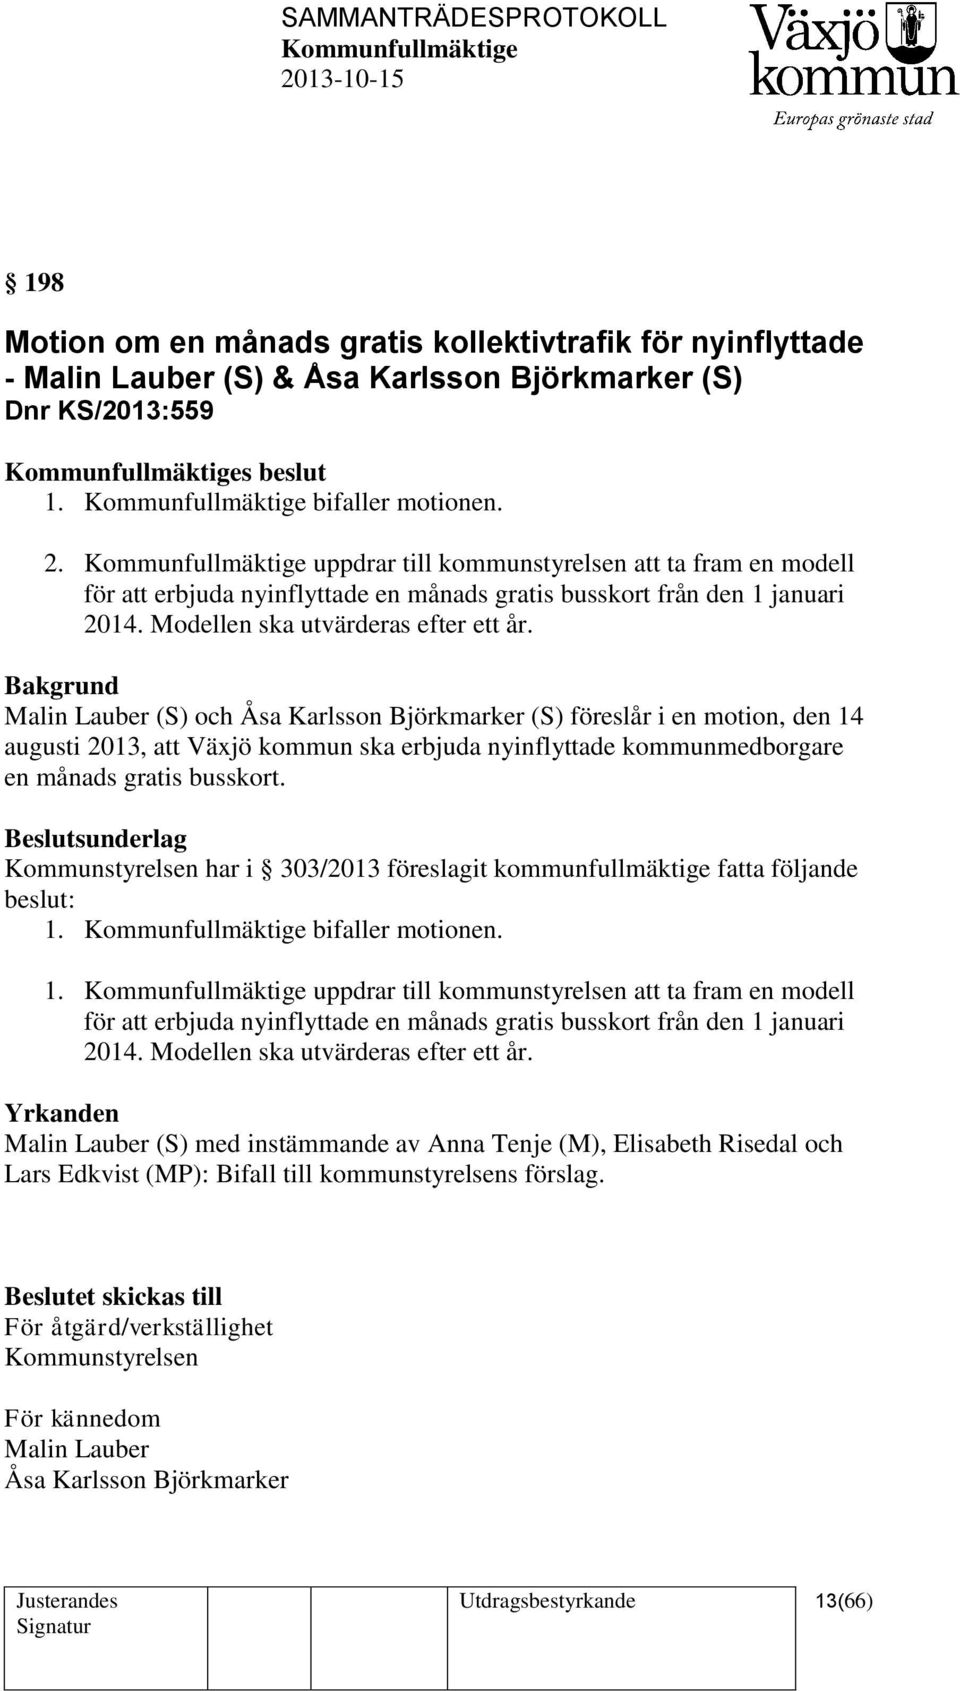 Malin Lauber (S) och Åsa Karlsson Björkmarker (S) föreslår i en motion, den 14 augusti 2013, att Växjö kommun ska erbjuda nyinflyttade kommunmedborgare en månads gratis busskort.